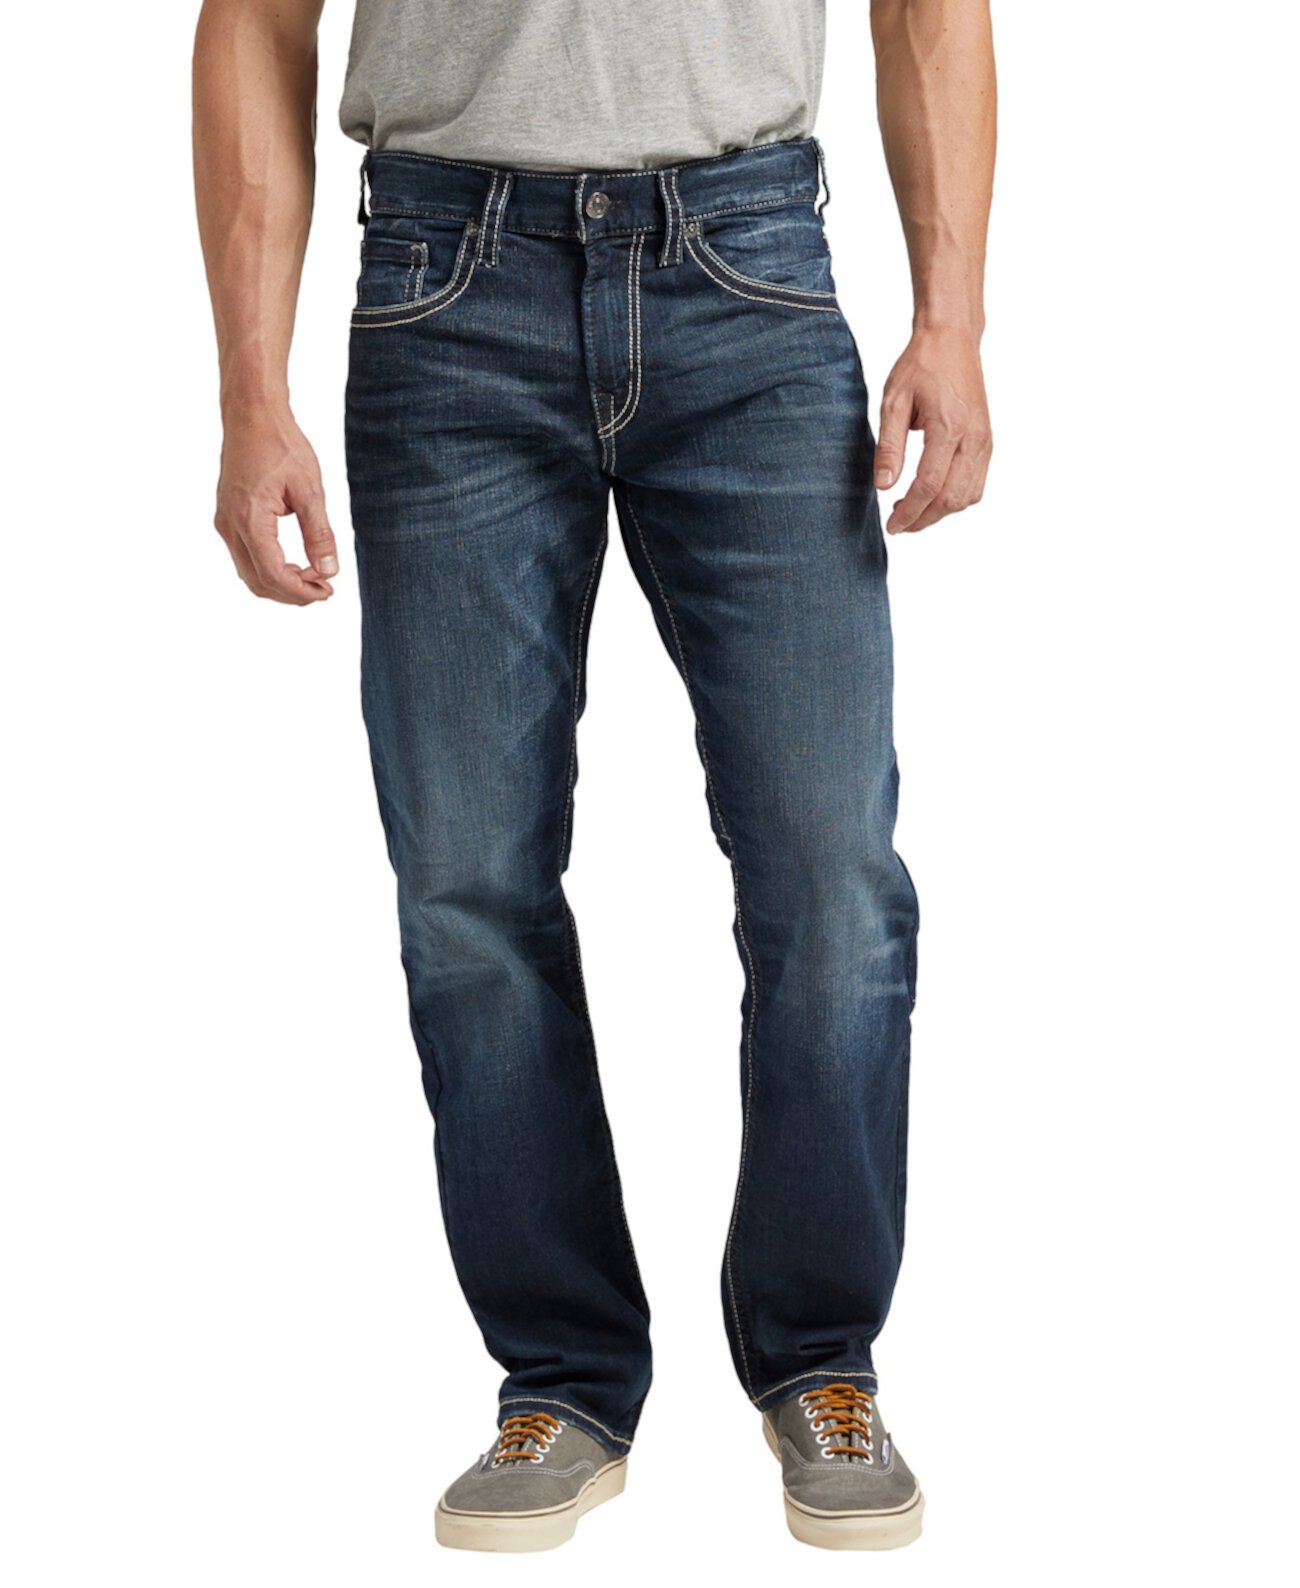 Мужские зауженные джинсы Eddie Athletic Fit Silver Jeans Co.